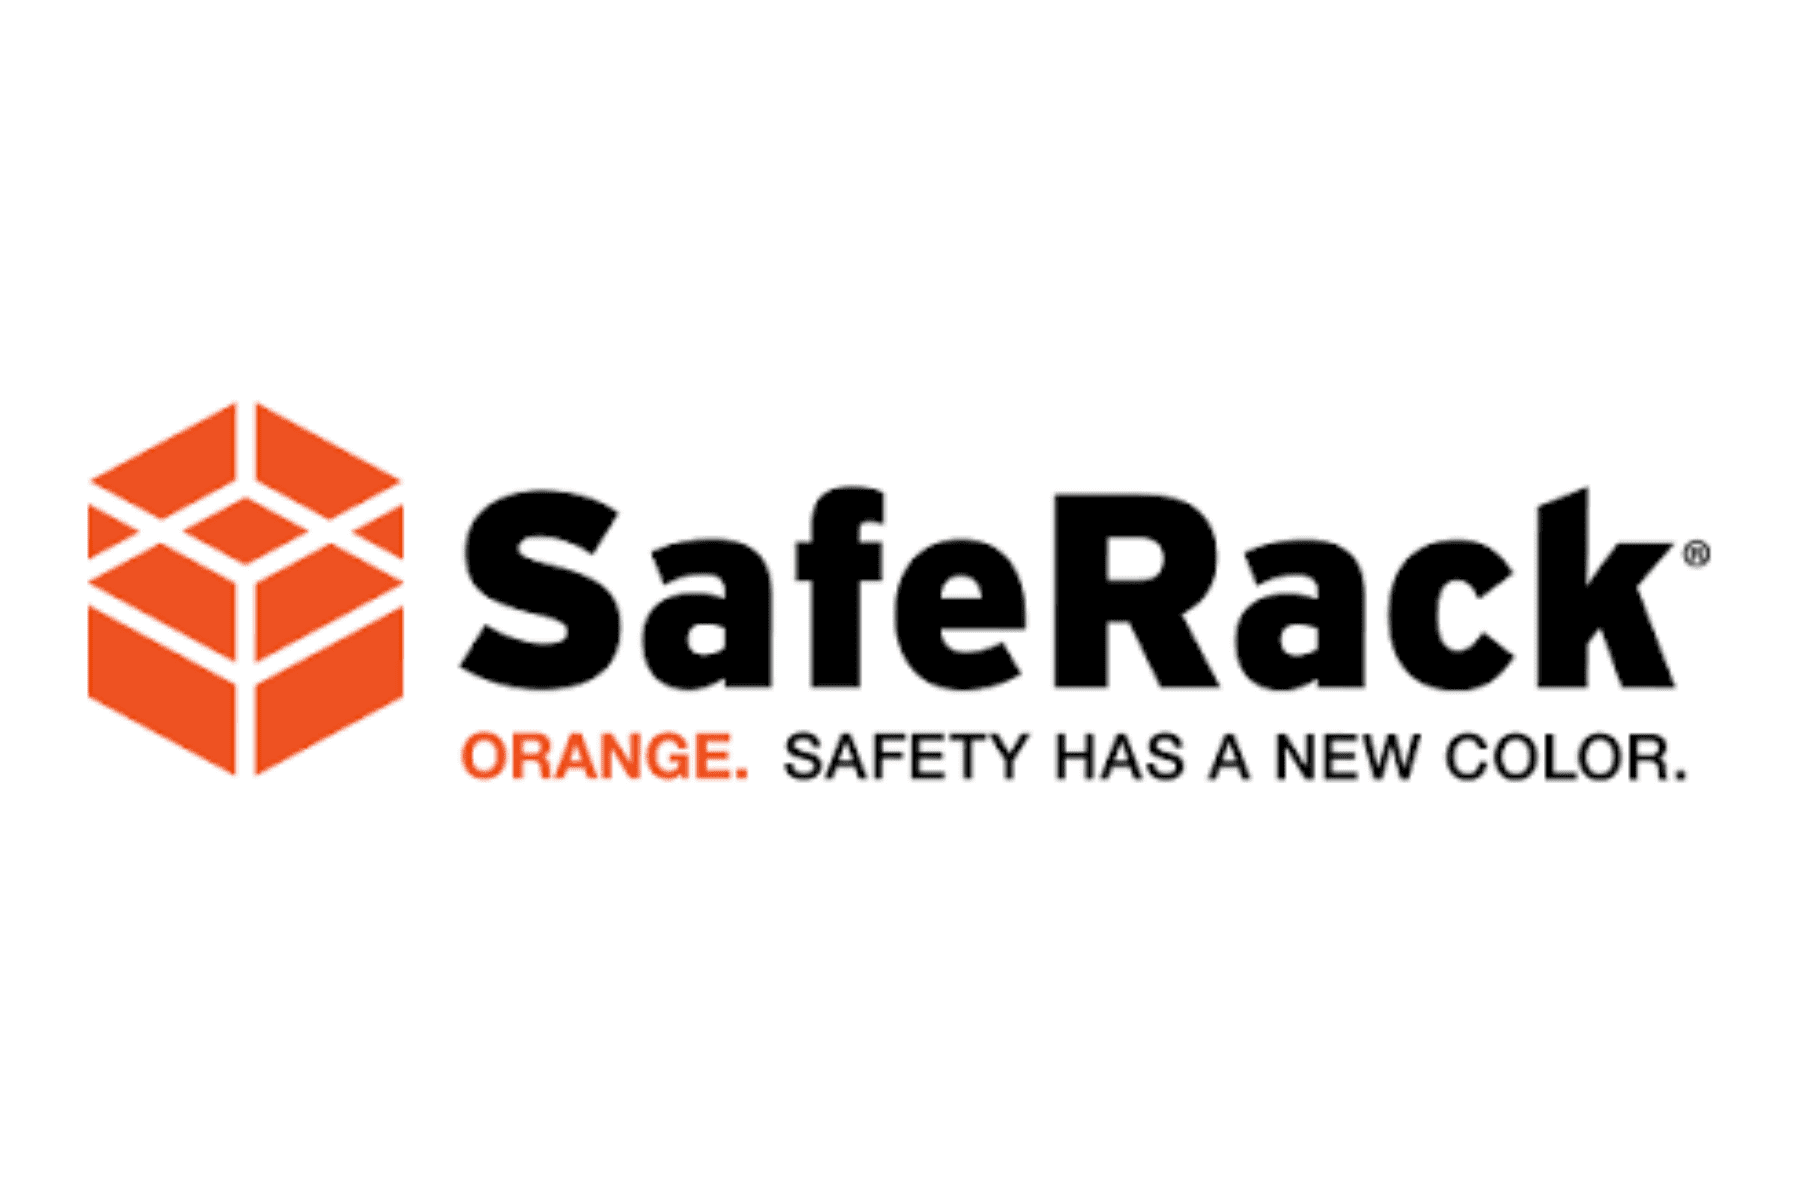 Safe Rack Orange Safety has a New Color